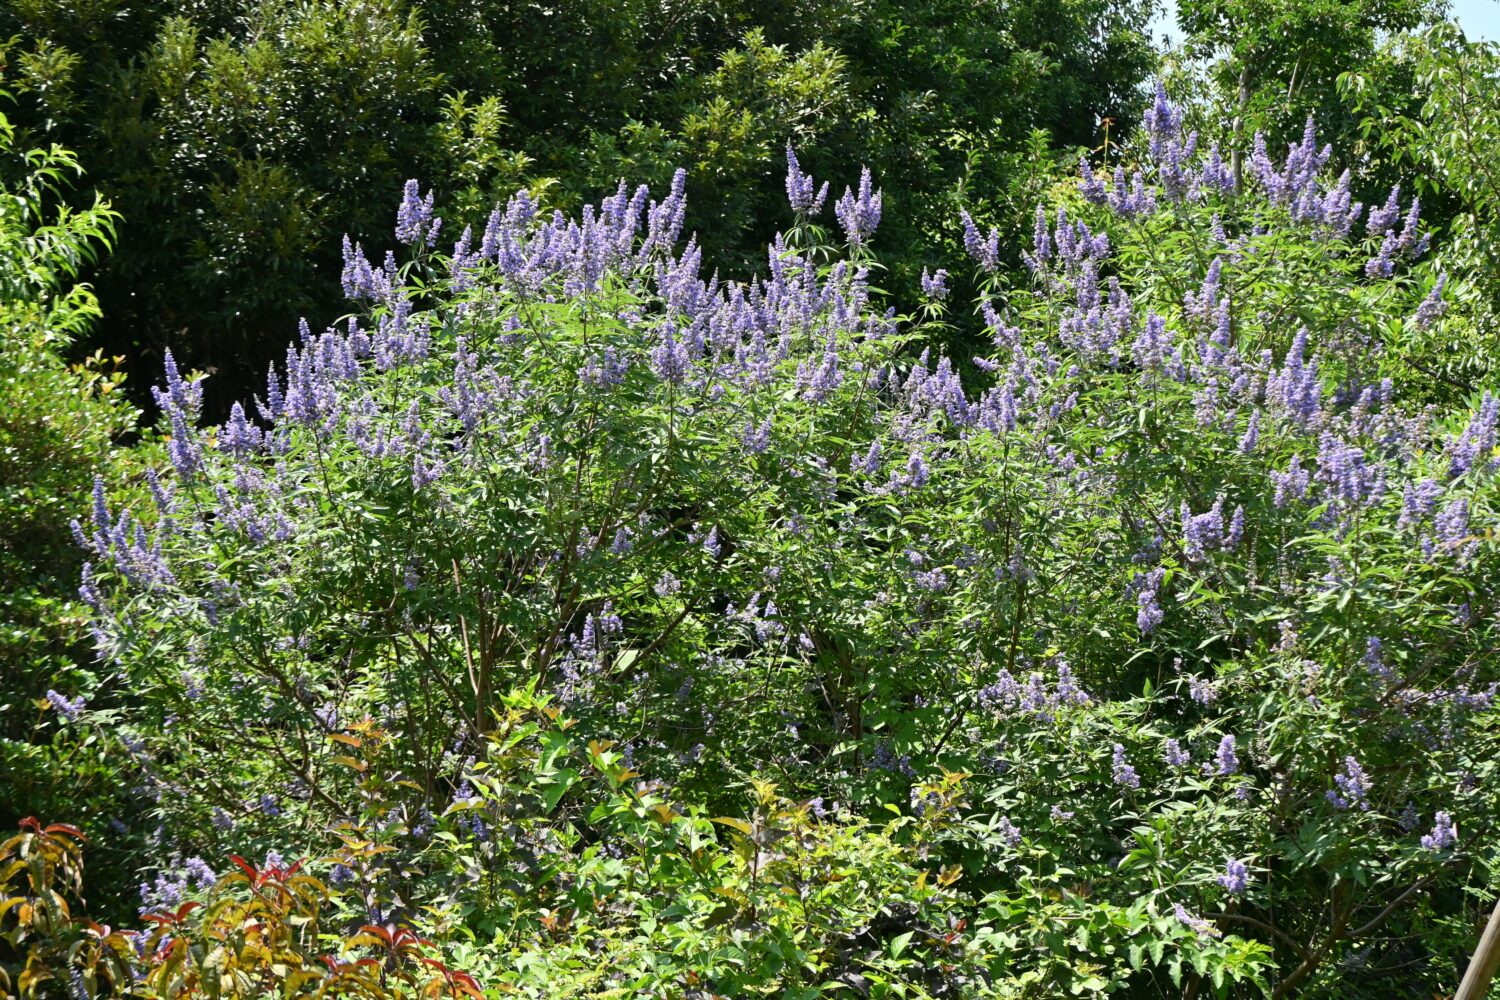 Fiori dell'albero casto (Vitex agnus-castus).  Arbusto deciduo delle Lamiaceae.  I fiori viola pallido a forma di labbro sbocciano in spighe dall'estate all'autunno.